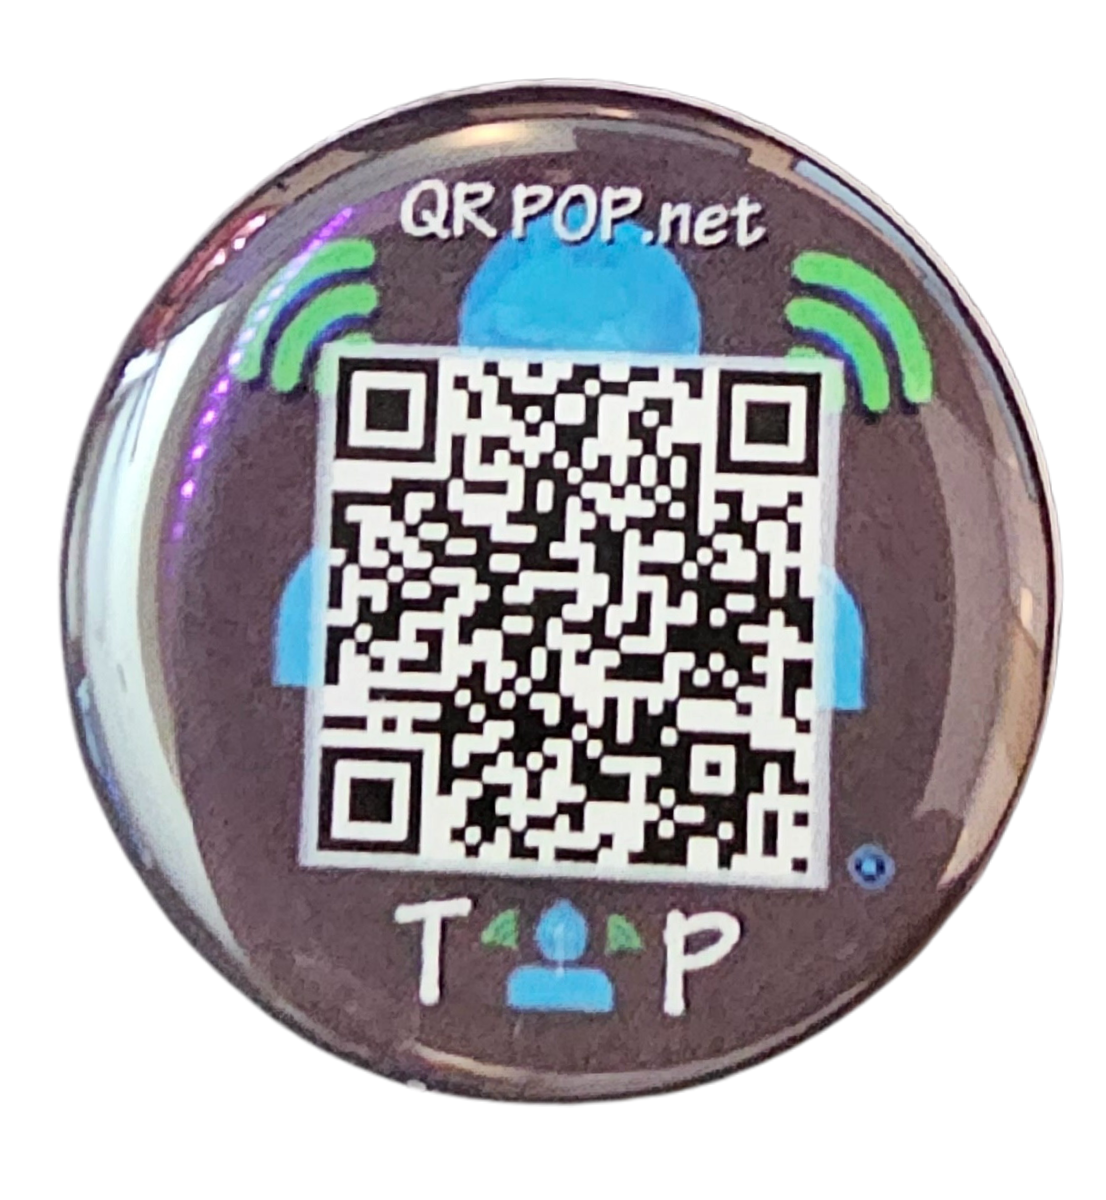 QR POP THE ORIGINAL NFC STICKER WITH A QR CODE MADE FOR PHONES